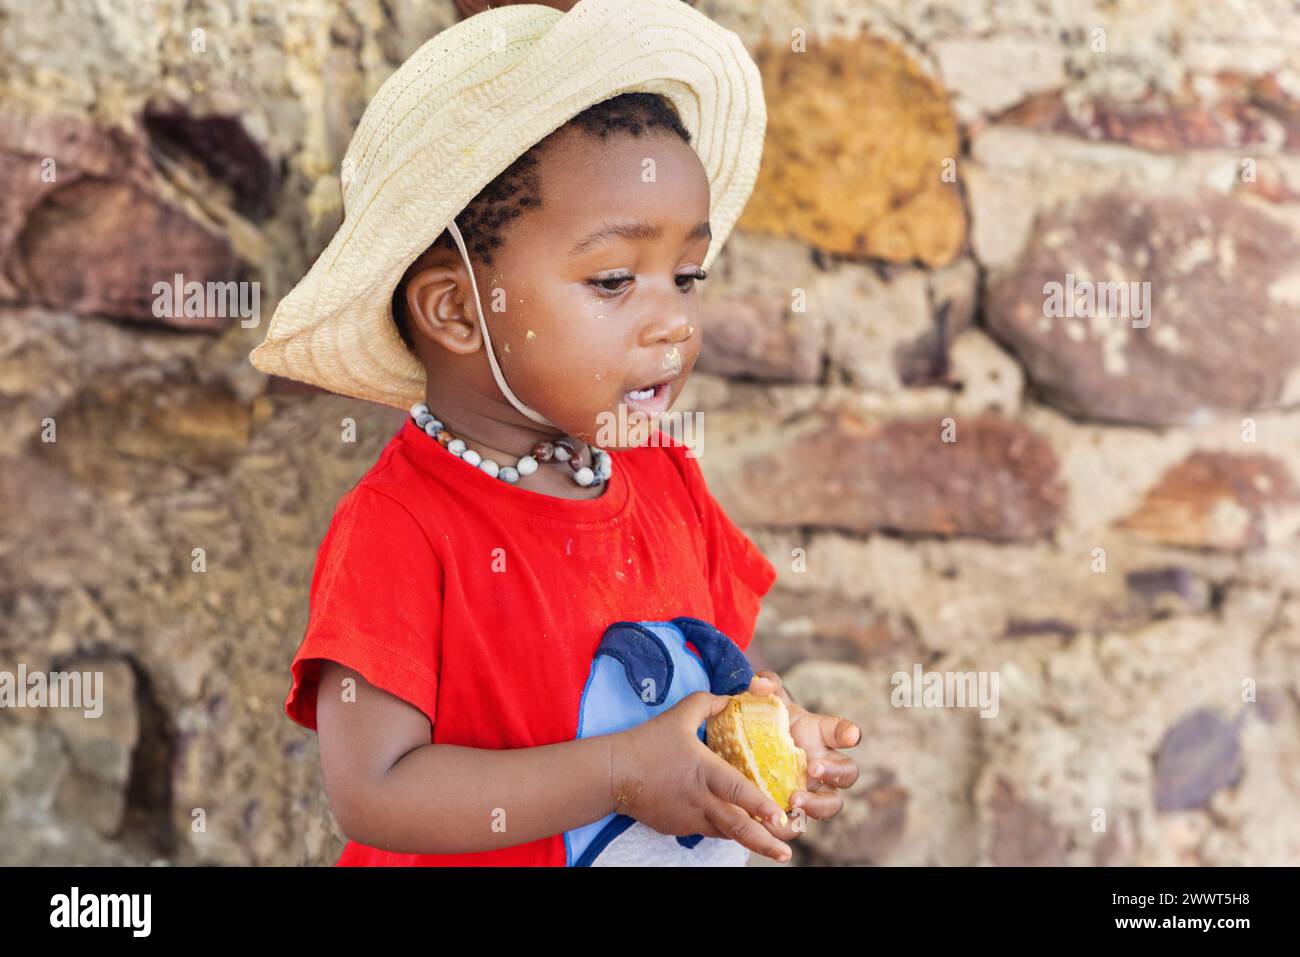 giovane ragazza africana affamata che mangia biscotti, vita di villaggio in una zona remota Foto Stock